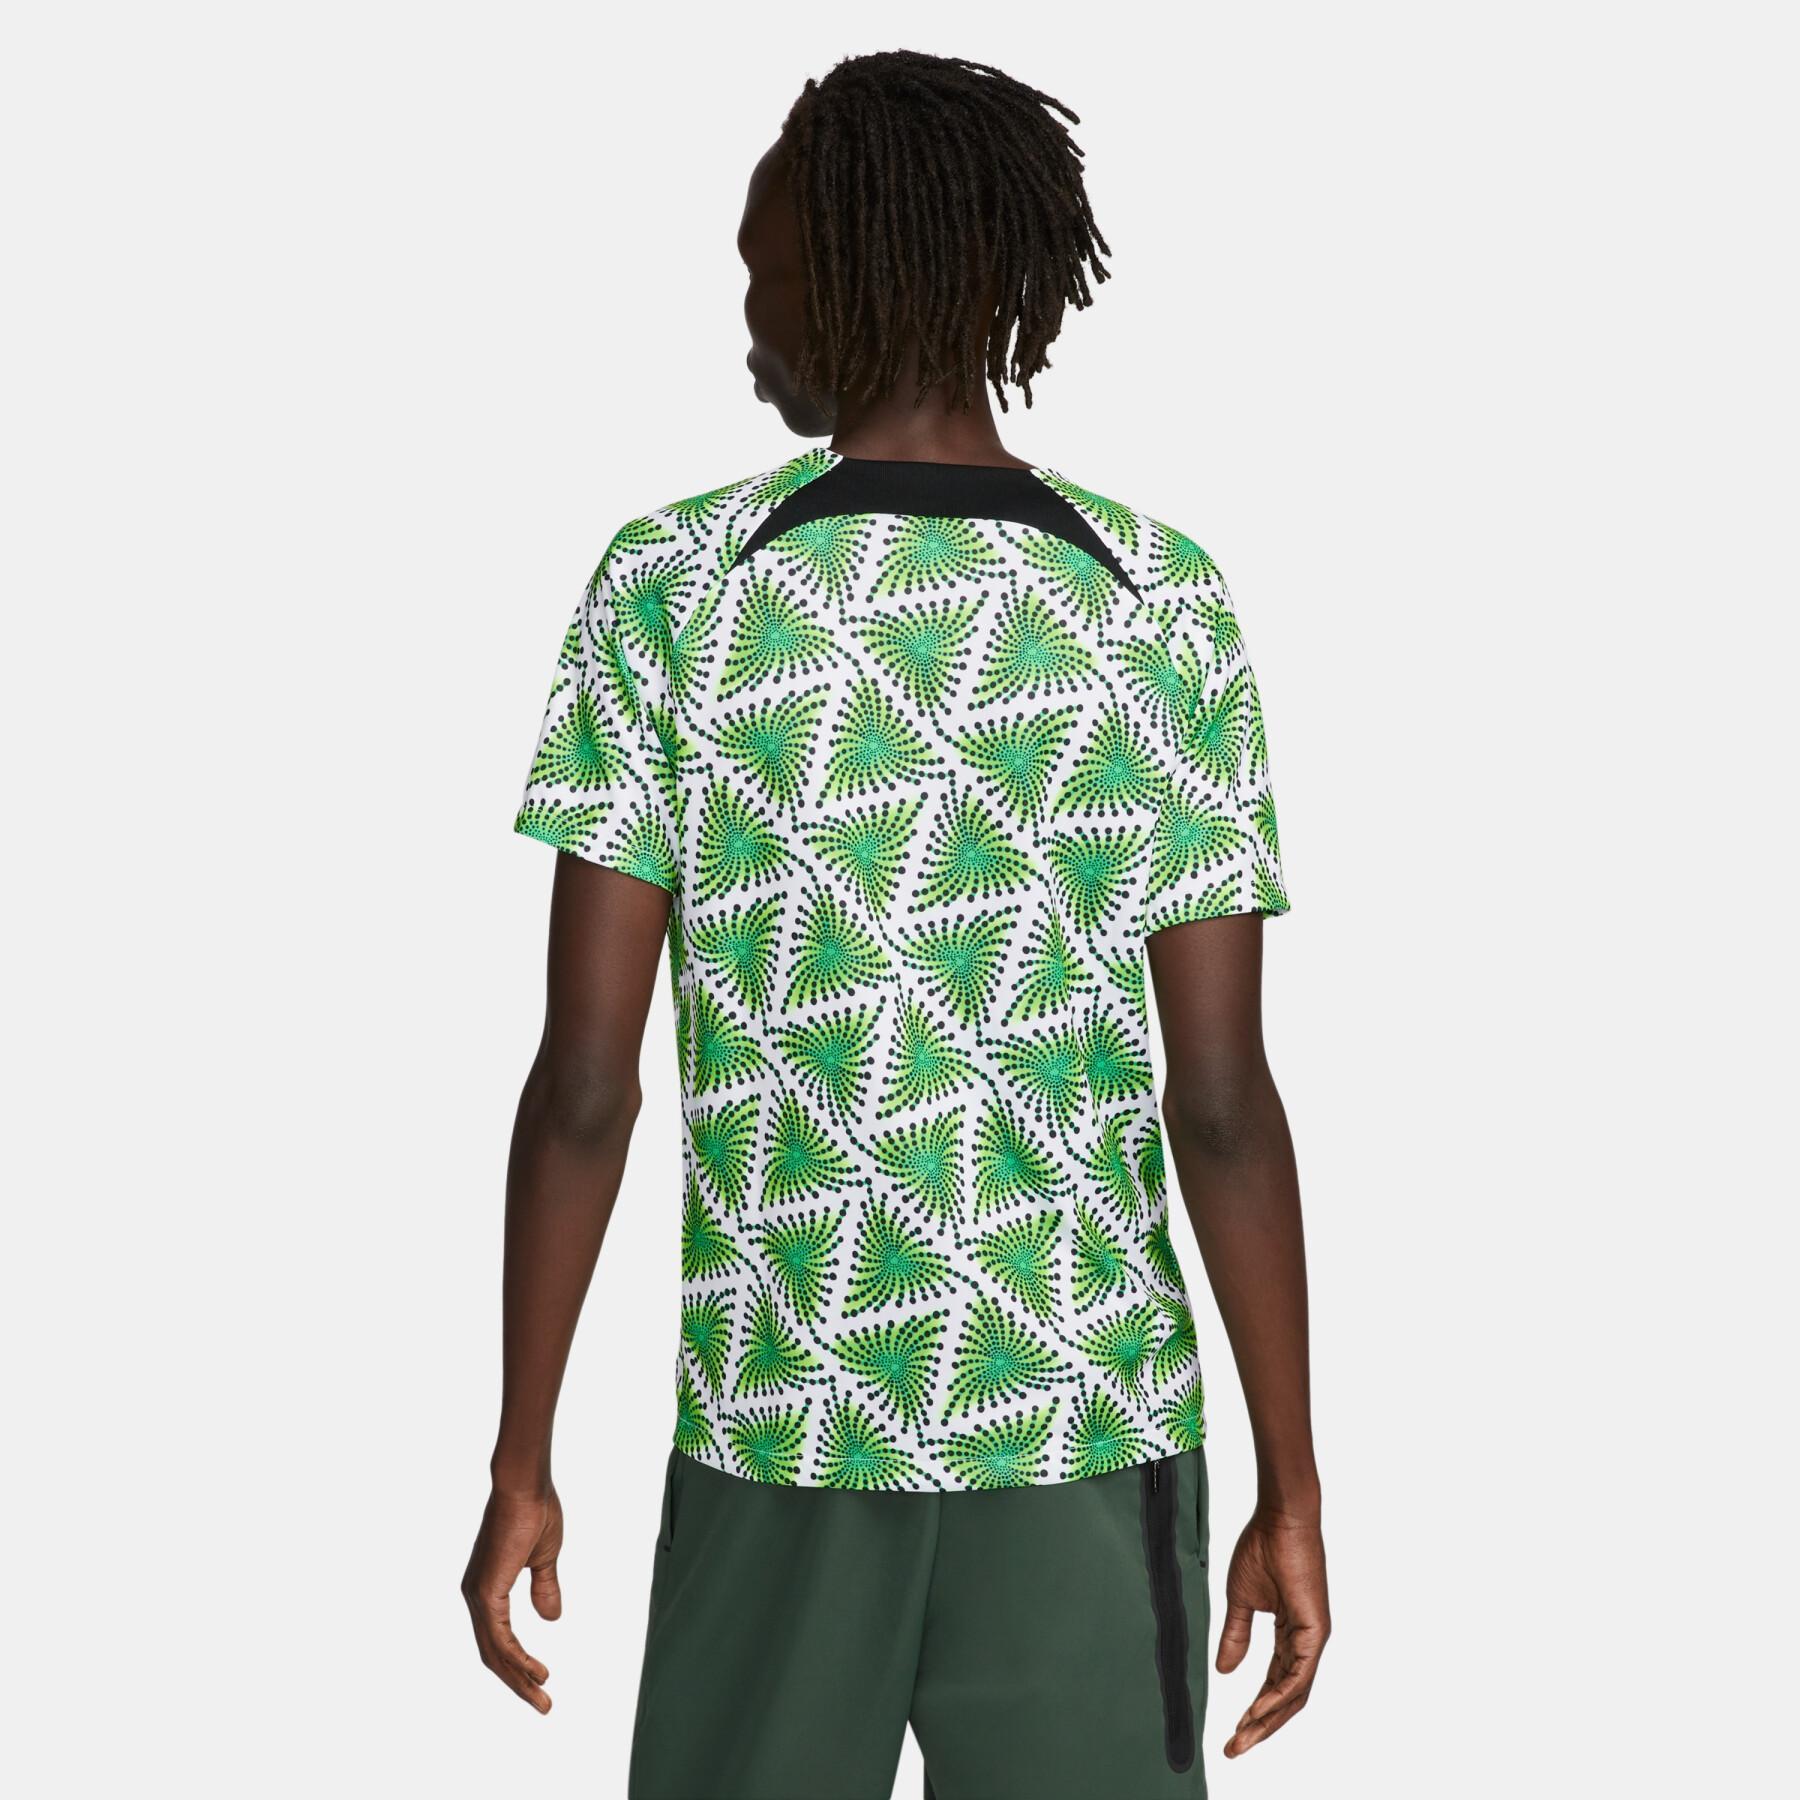 Koszulka przedmeczowa Mistrzostw Świata 2022 Nigeria